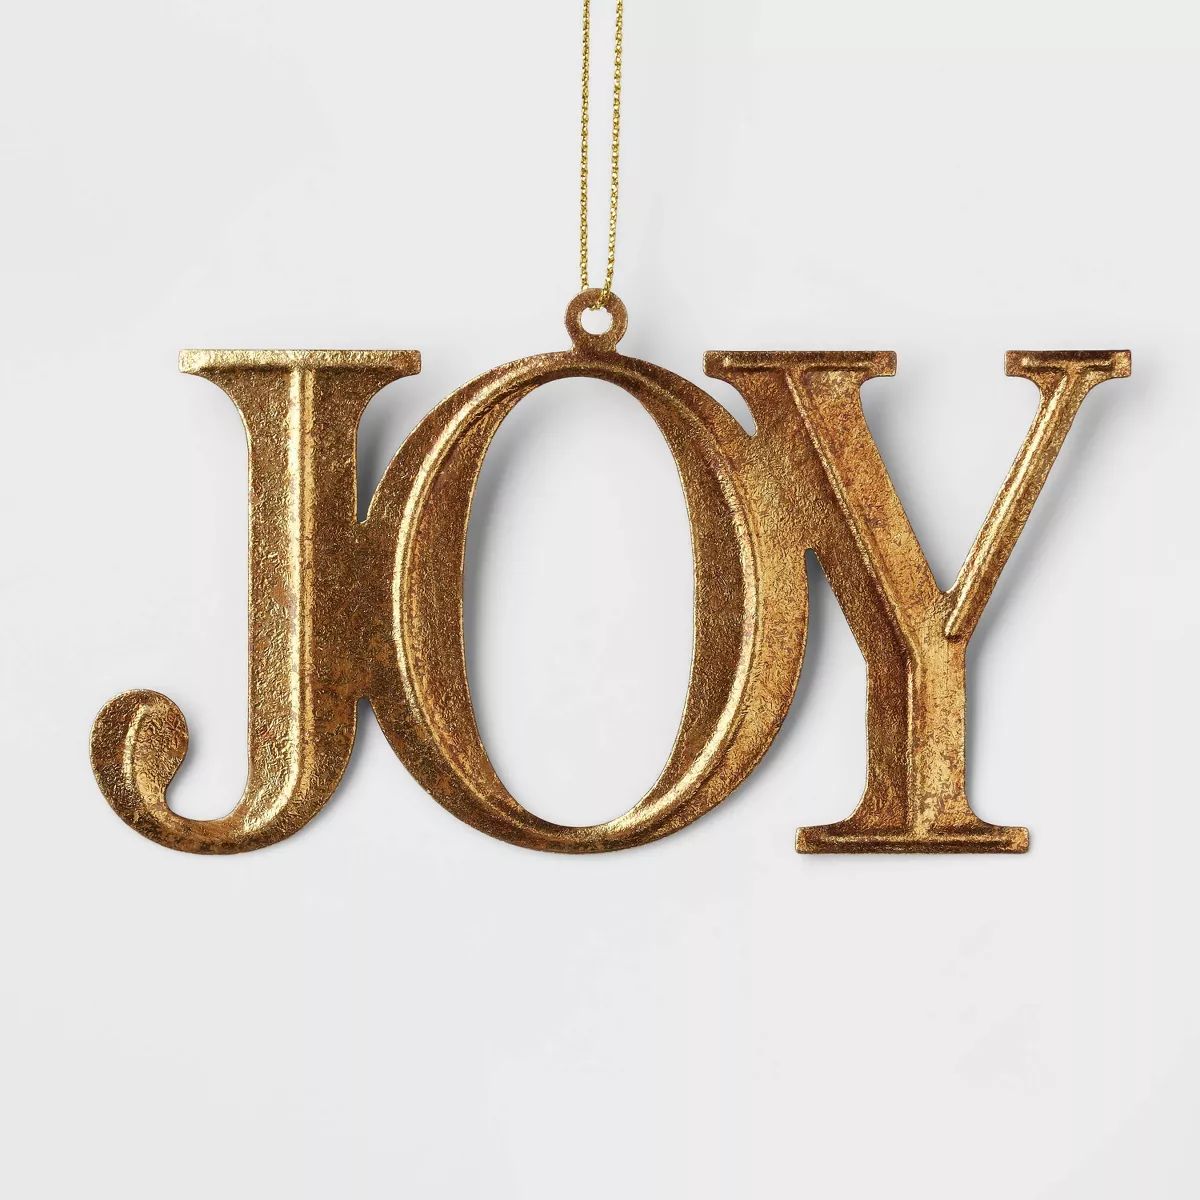 Metal 'Joy' Christmas Tree Ornament Gold - Wondershop™ | Target